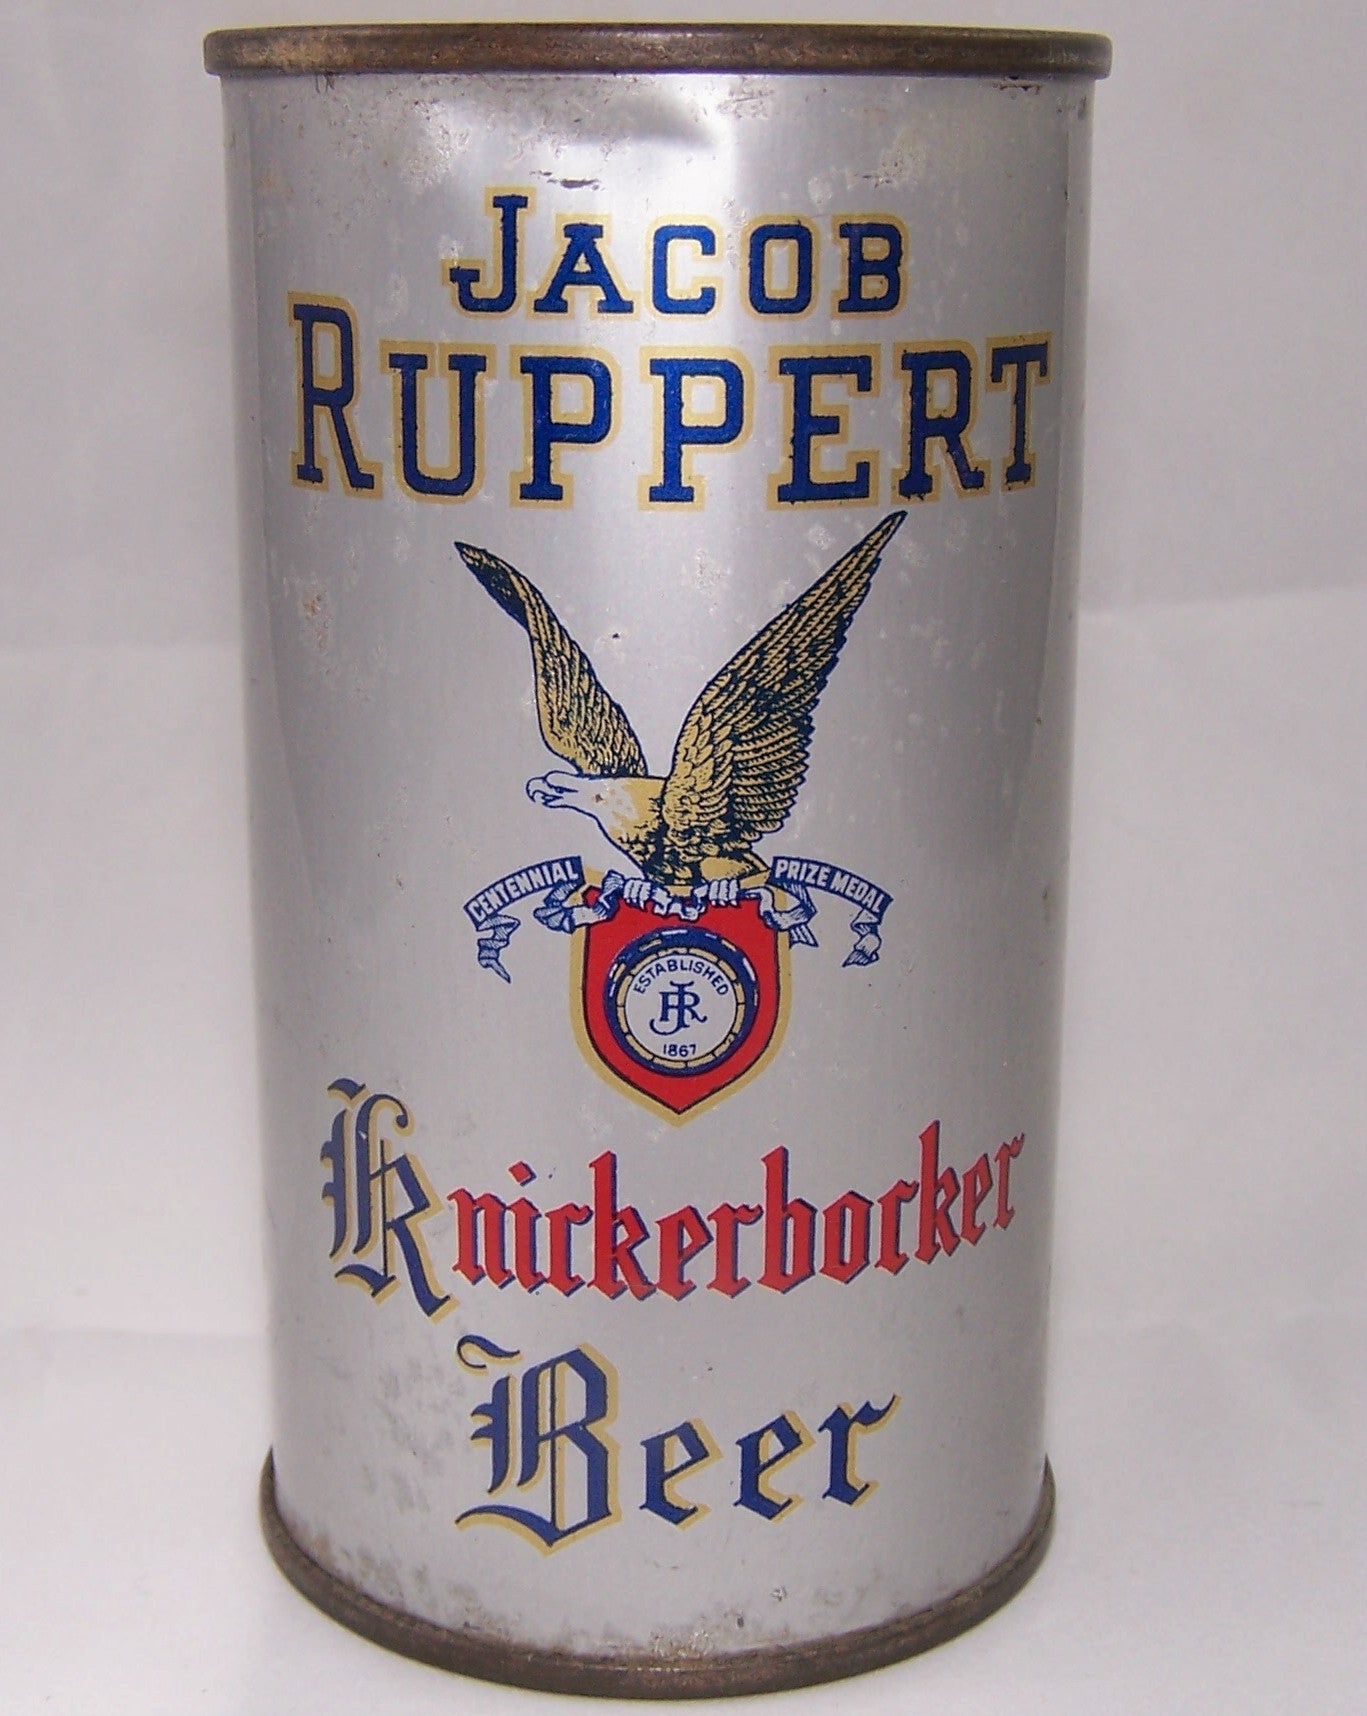 Jacob Ruppert Knickerbocker Beer, USBC 126-1, Grade 1- Sold on 07/27/18